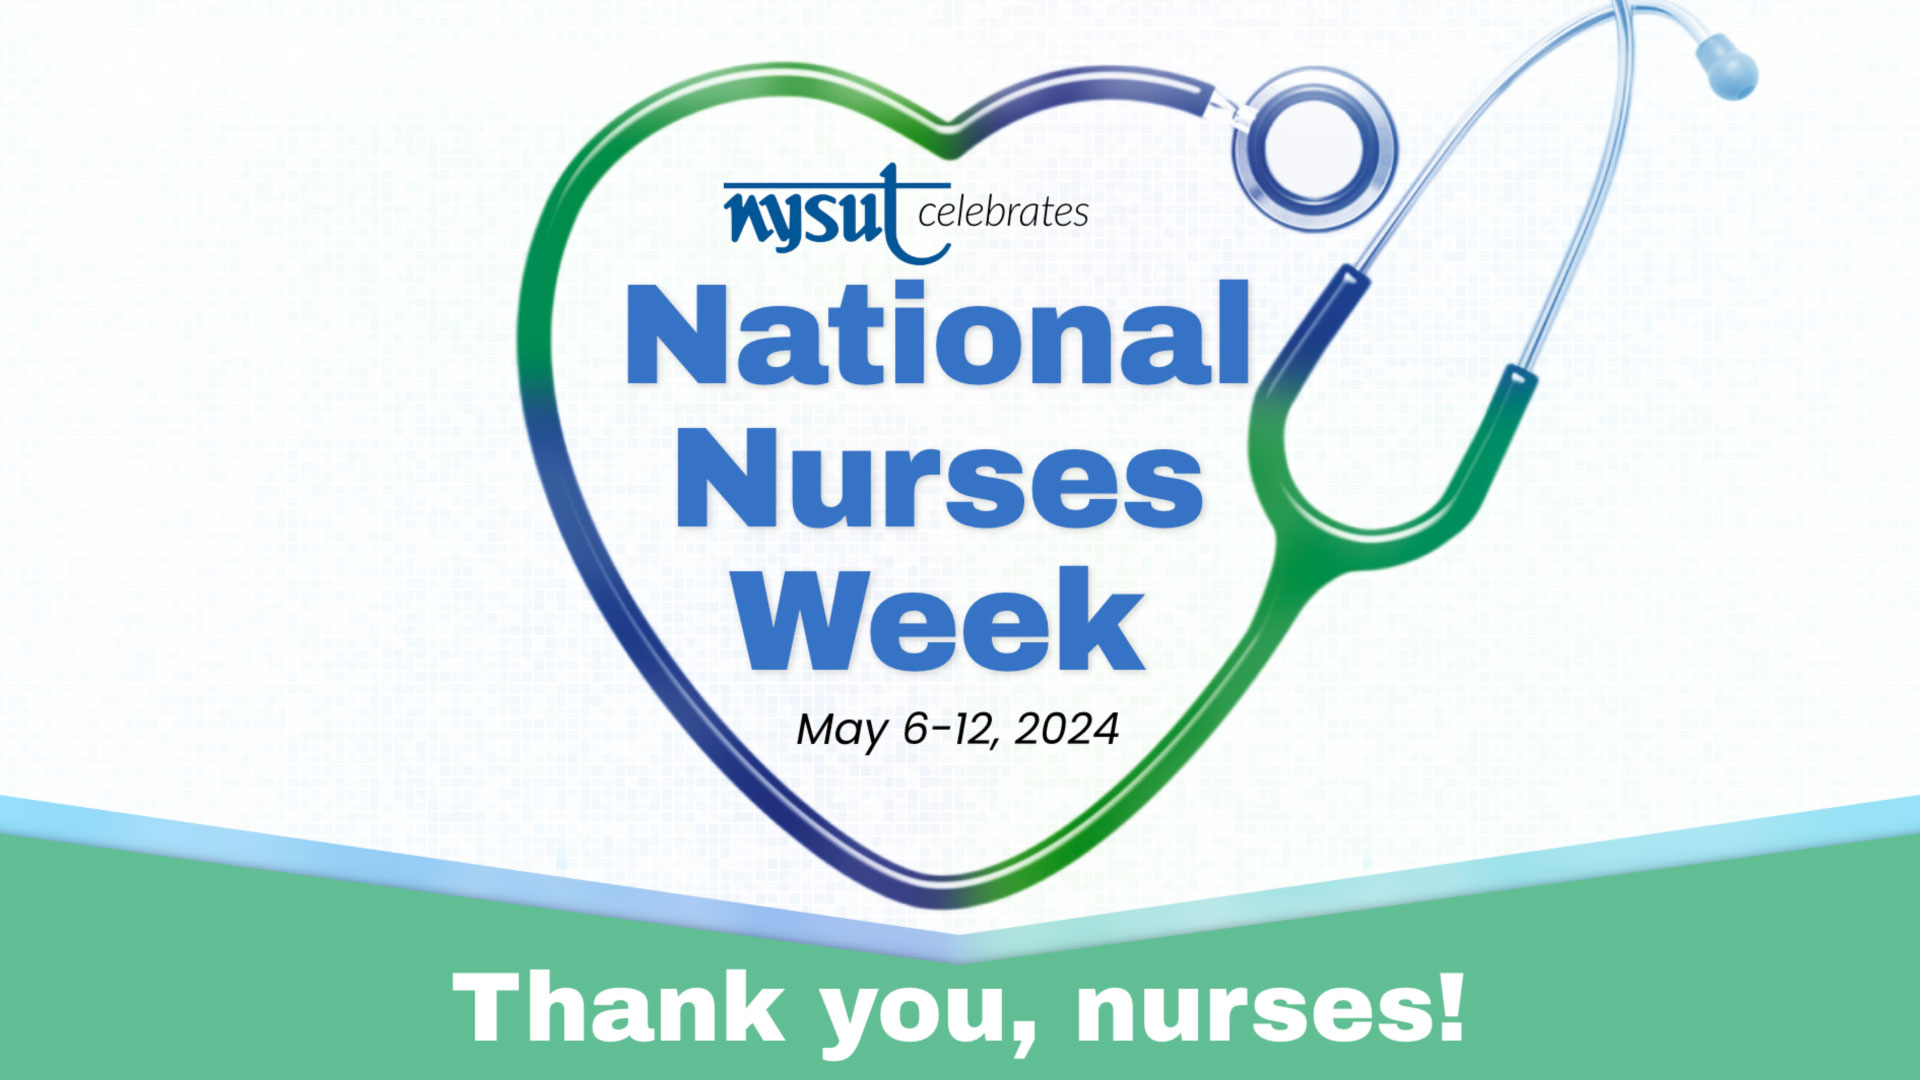 Thank you, nurses!